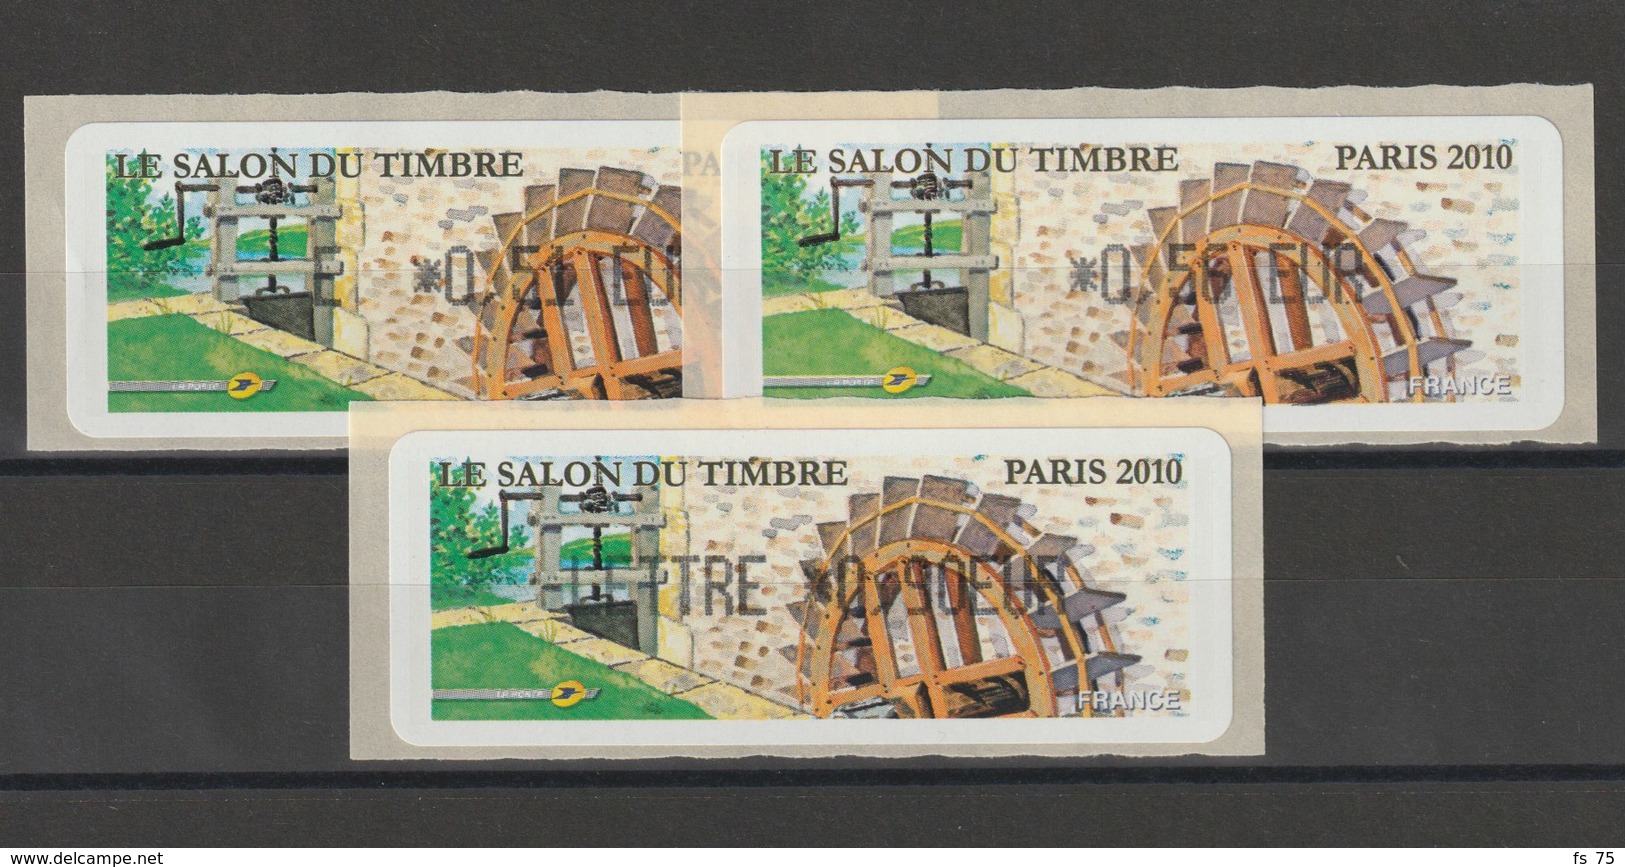 FRANCE - 3 VIGNETTES 0,51€, 0,56€ ET 0,90€ - LE SALON DU TIMBRE PARIS 2010 - 2010-... Illustrated Franking Labels